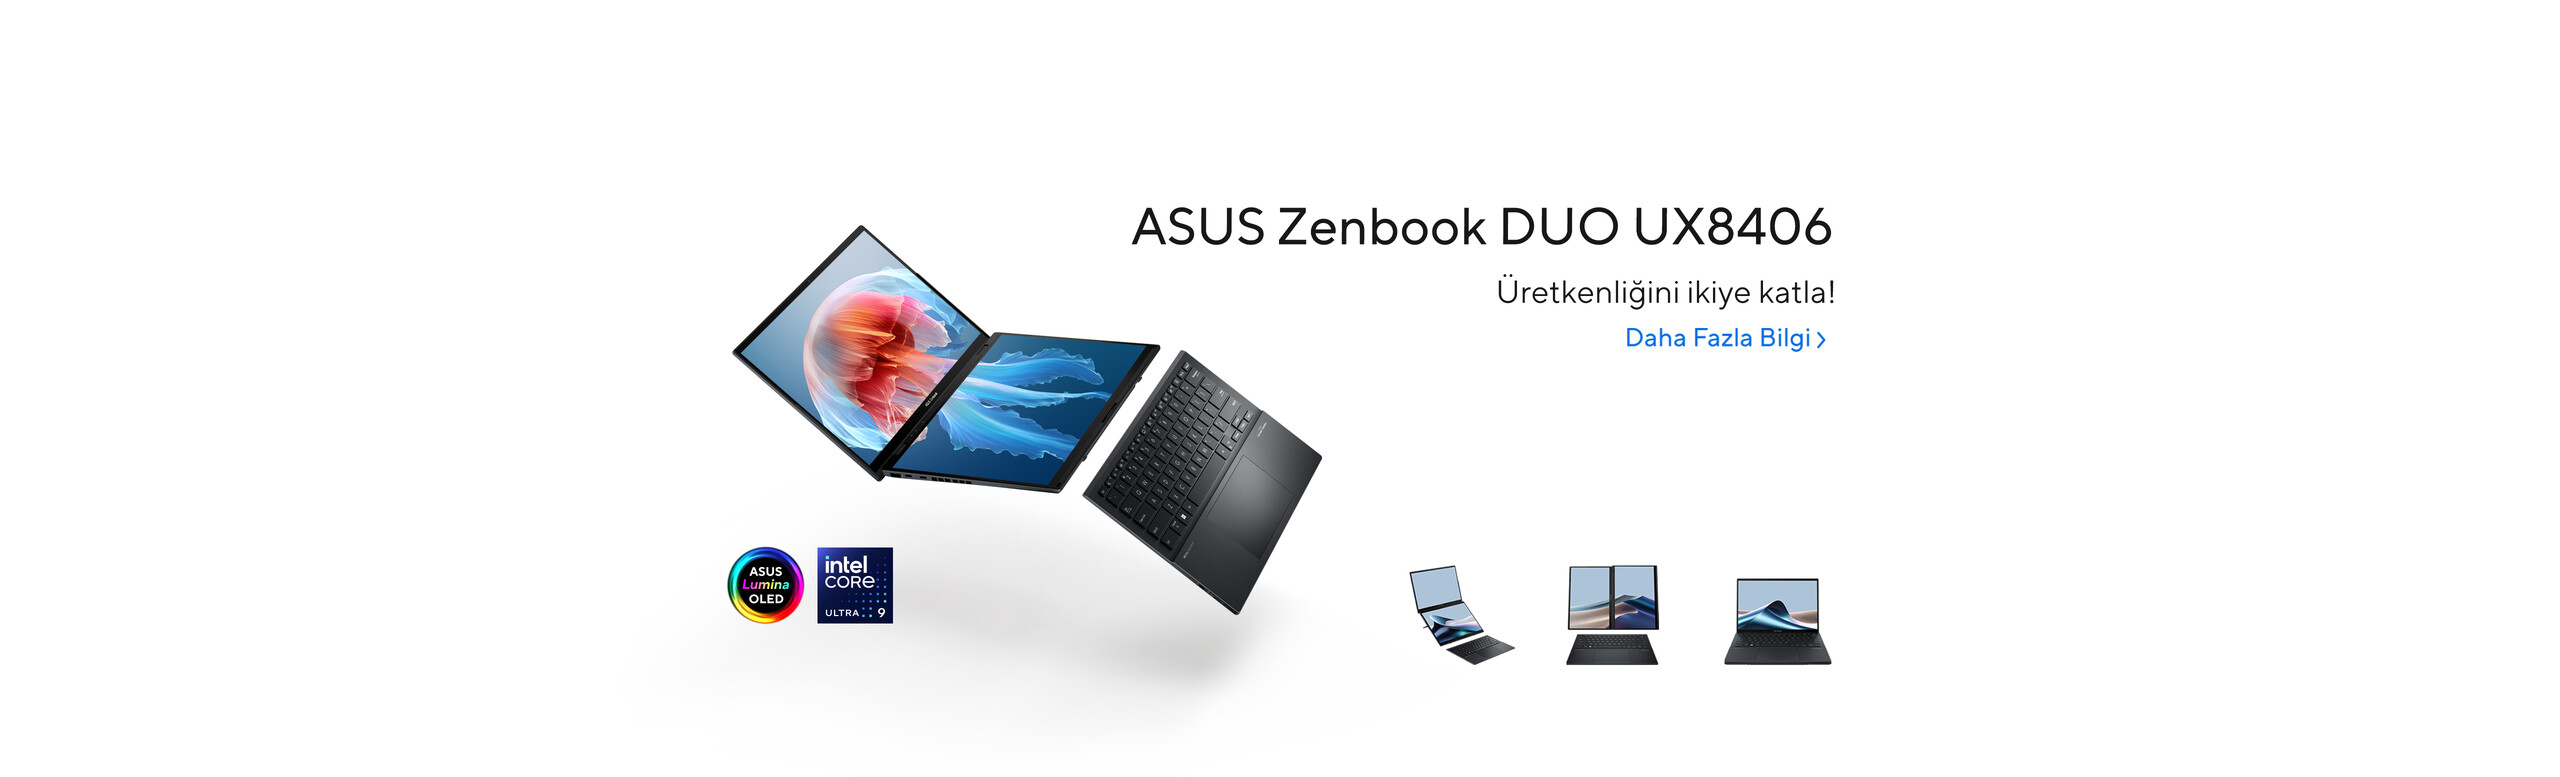 ASUS Zenbook DUO UX8406 ile Üretkenliğini ikiye katla!